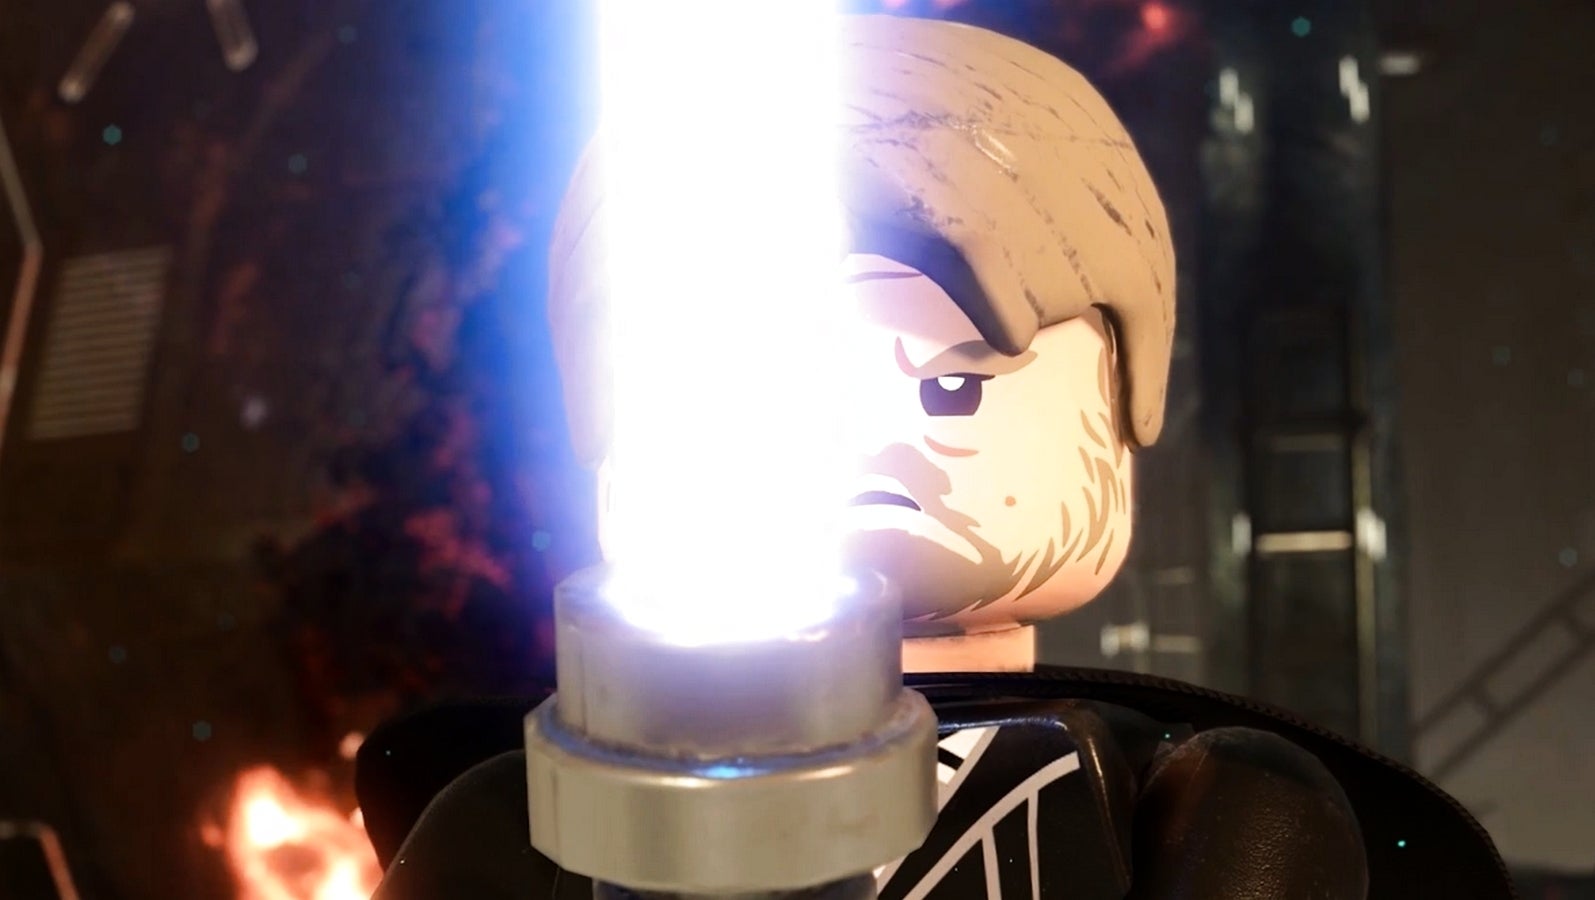 Bilder zu Lego Star Wars: Die Skywalker Saga erscheint im Frühjahr 2022 - neuer Trailer!